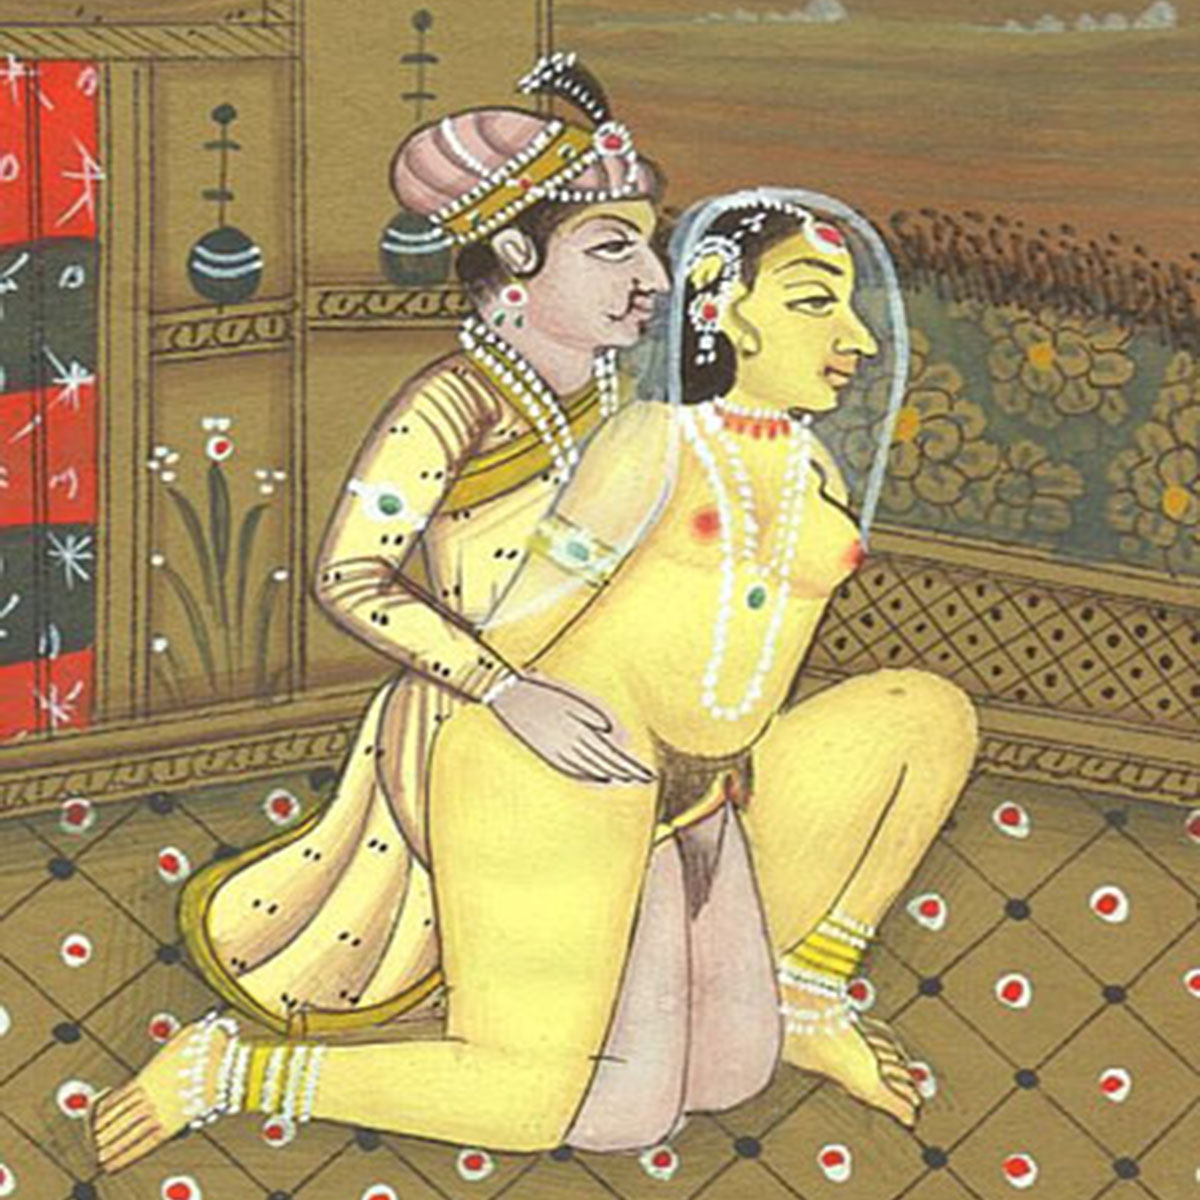 Телеграм Индийской Порно